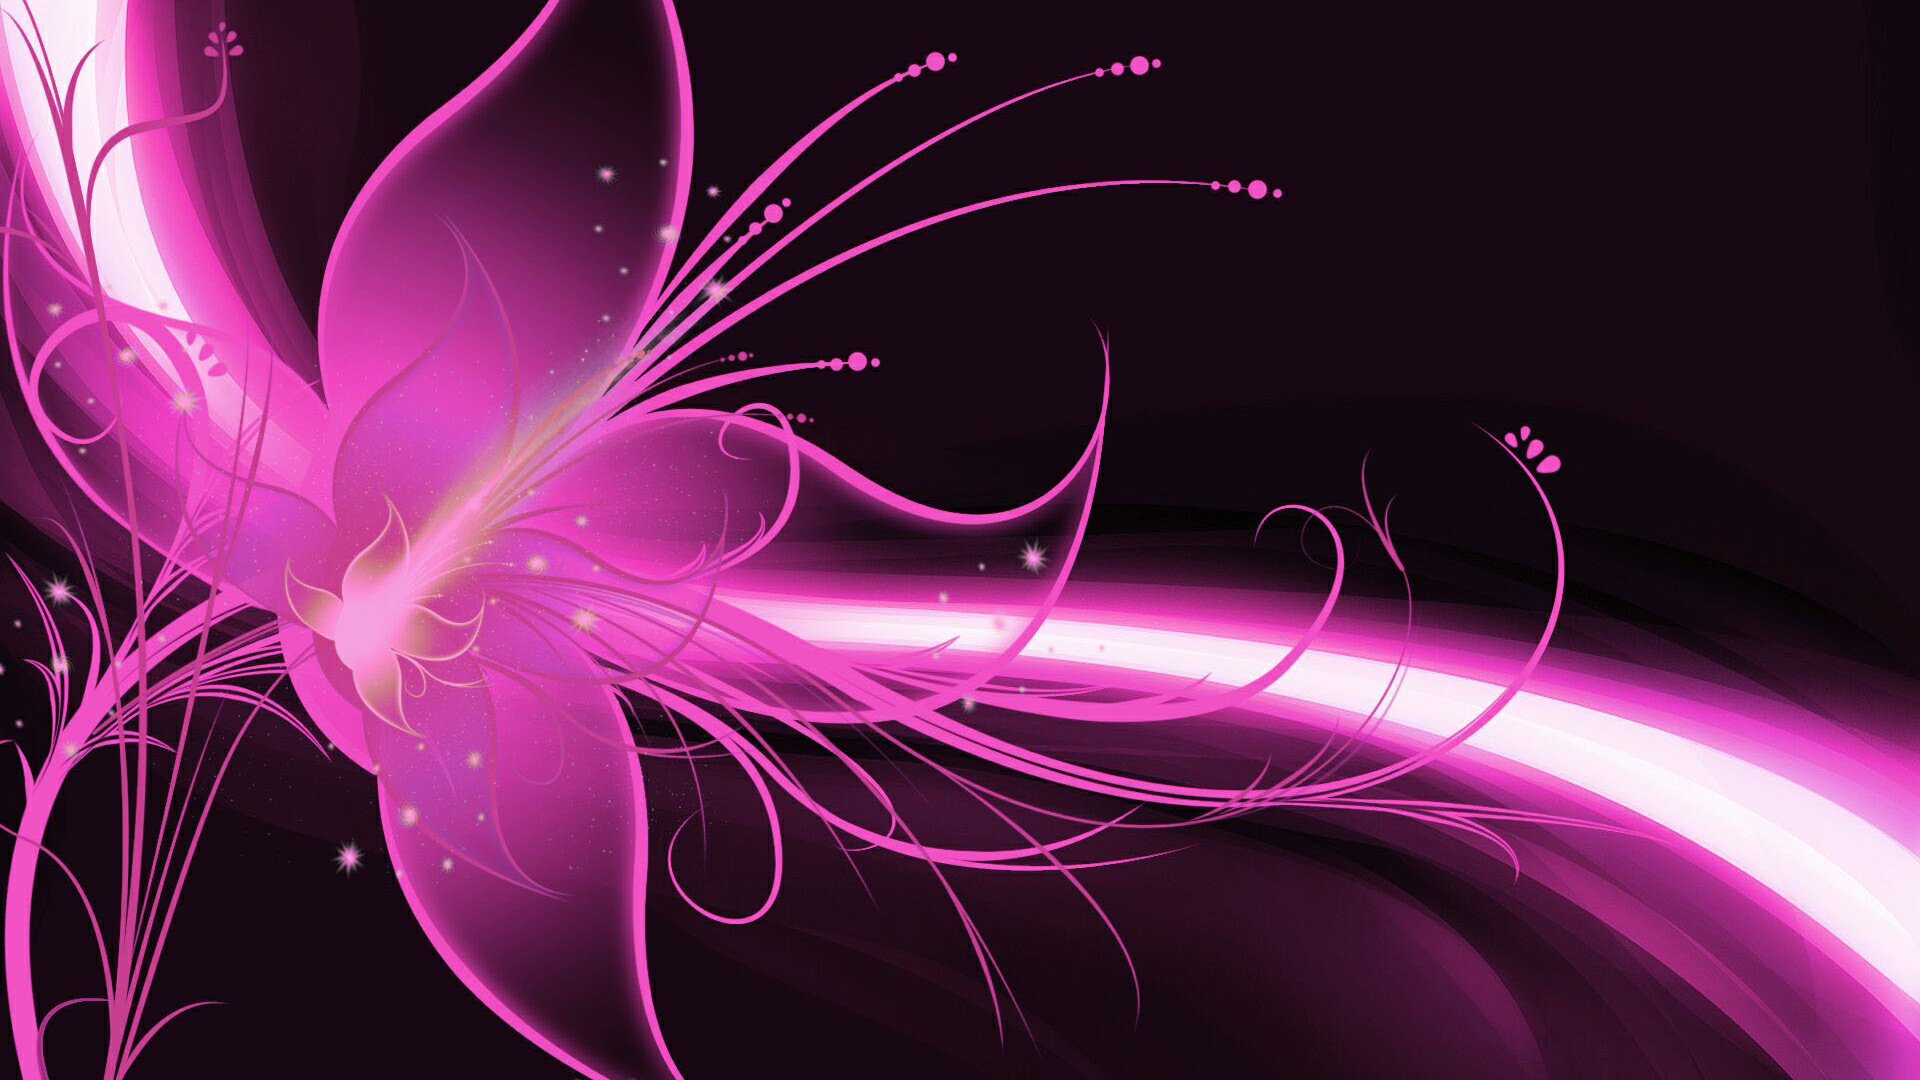 粉红色, 紫罗兰色, 紫色的, 图形设计, 分形技术 壁纸 1920x1080 允许